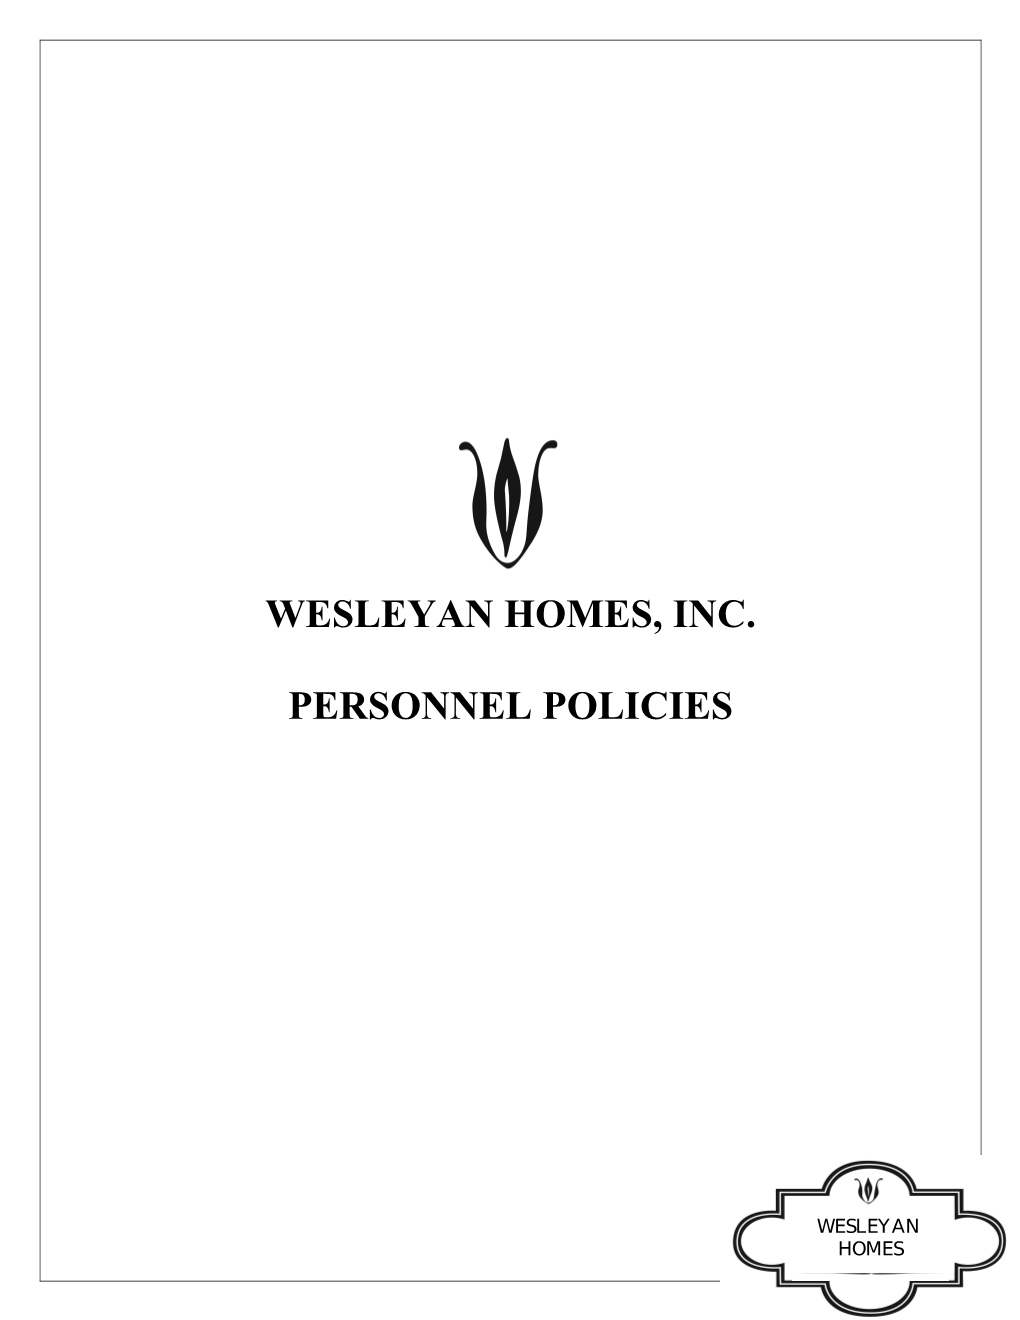 Wesleyan Homes, Inc